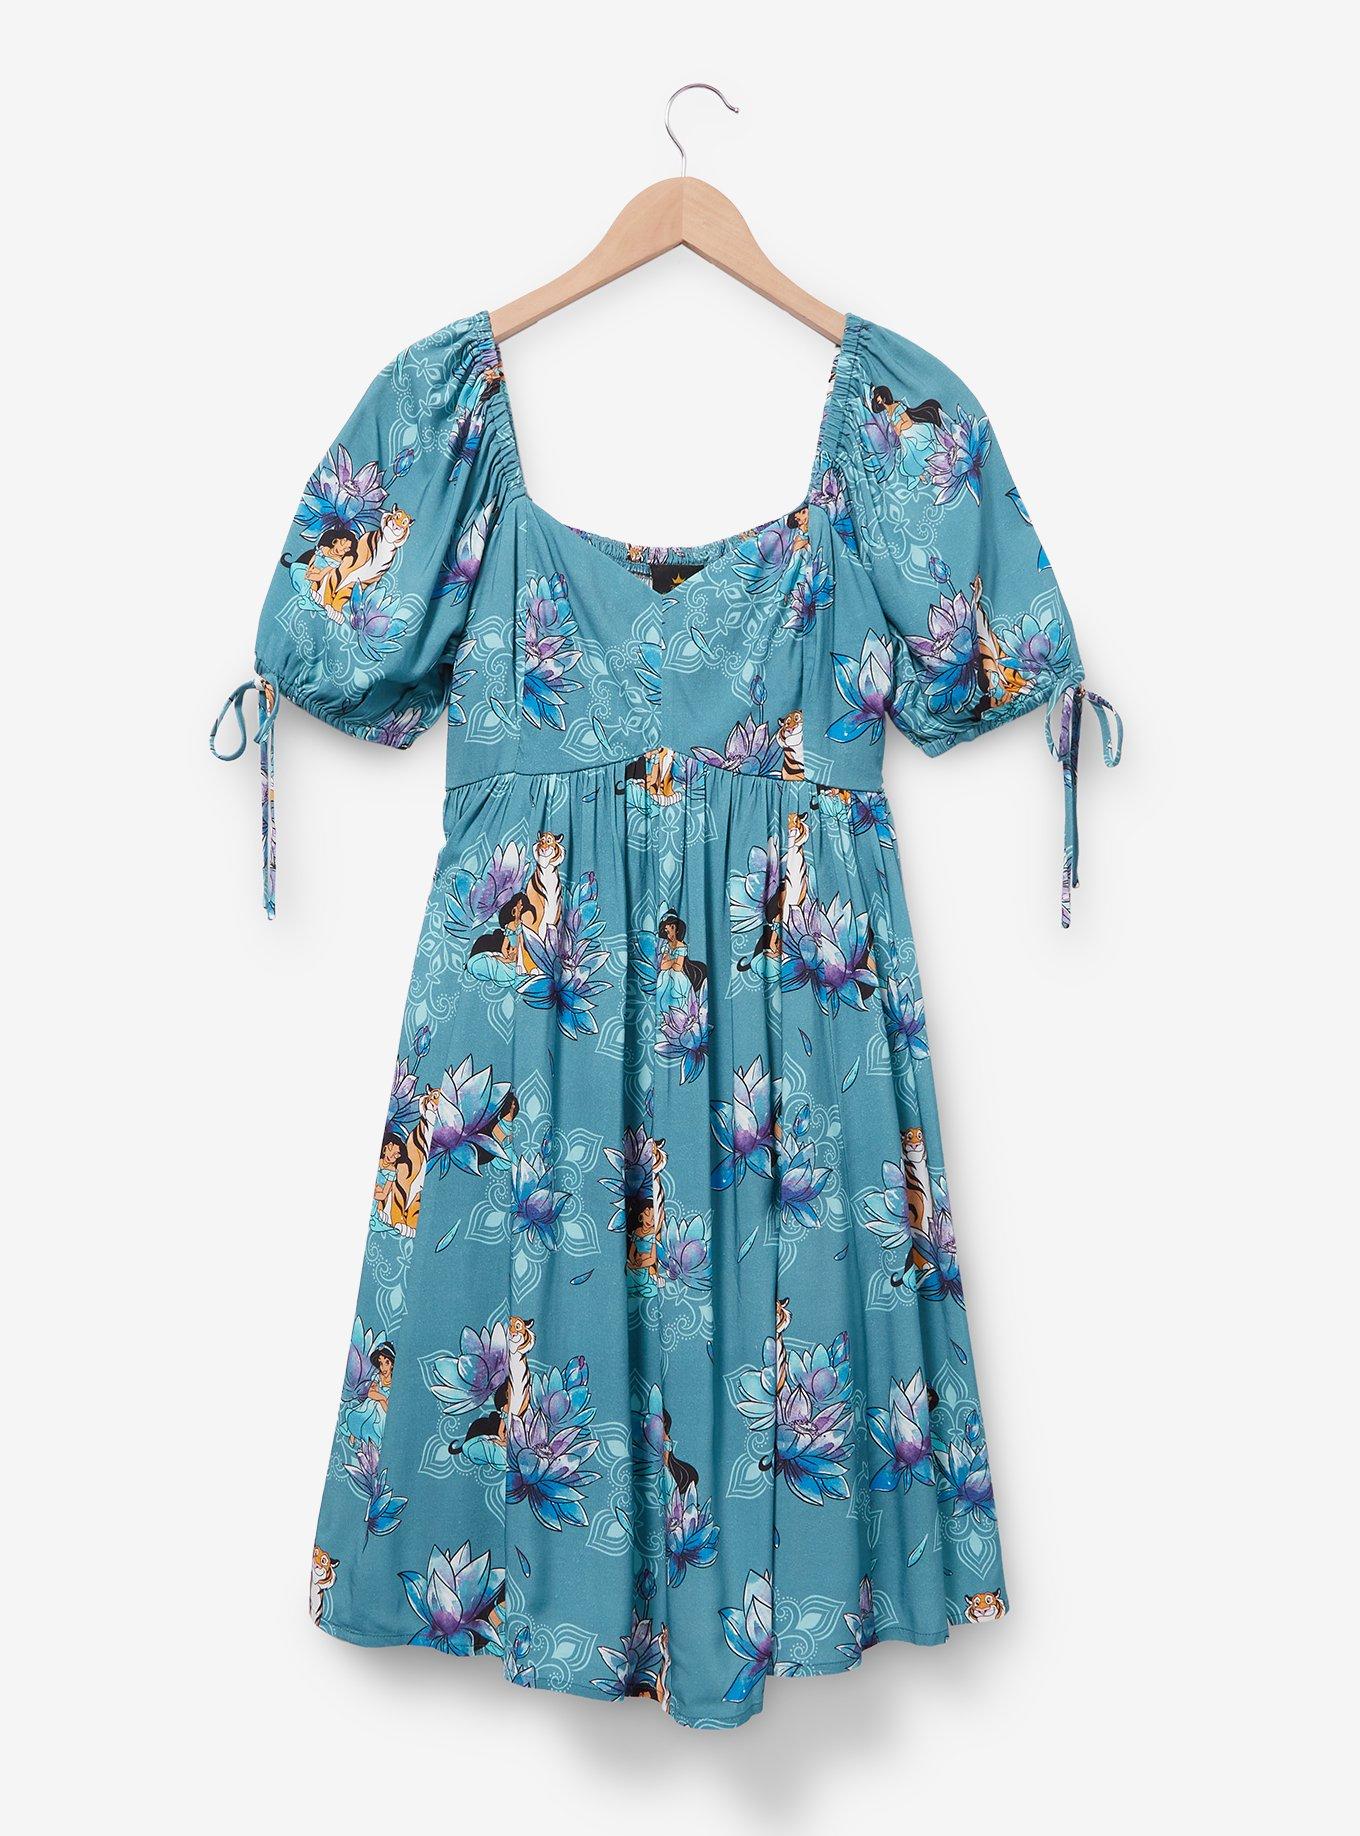 Disney Aladdin Jasmine Floral Allover Print Midi Dress - BoxLunch Exclusive, AQUA, hi-res